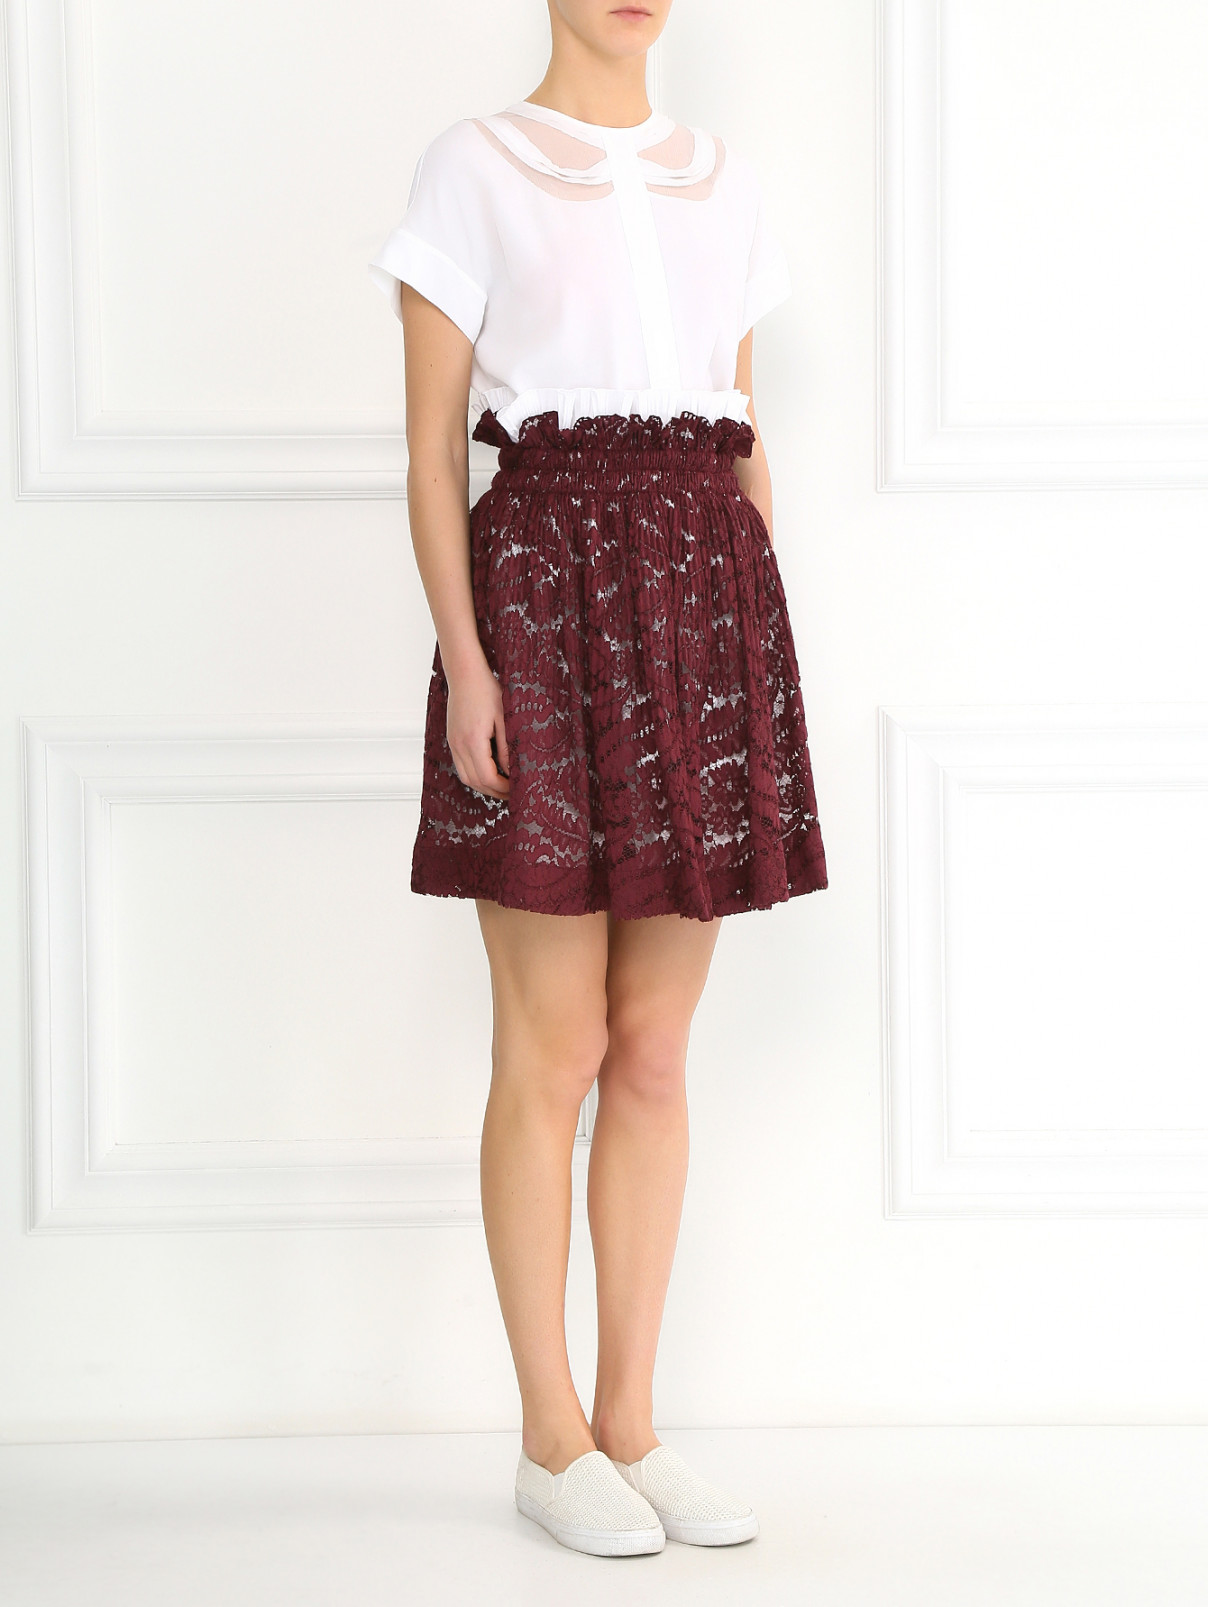 Кружевная юбка-мини из хлопка на резинке N21  –  Модель Общий вид  – Цвет:  Красный